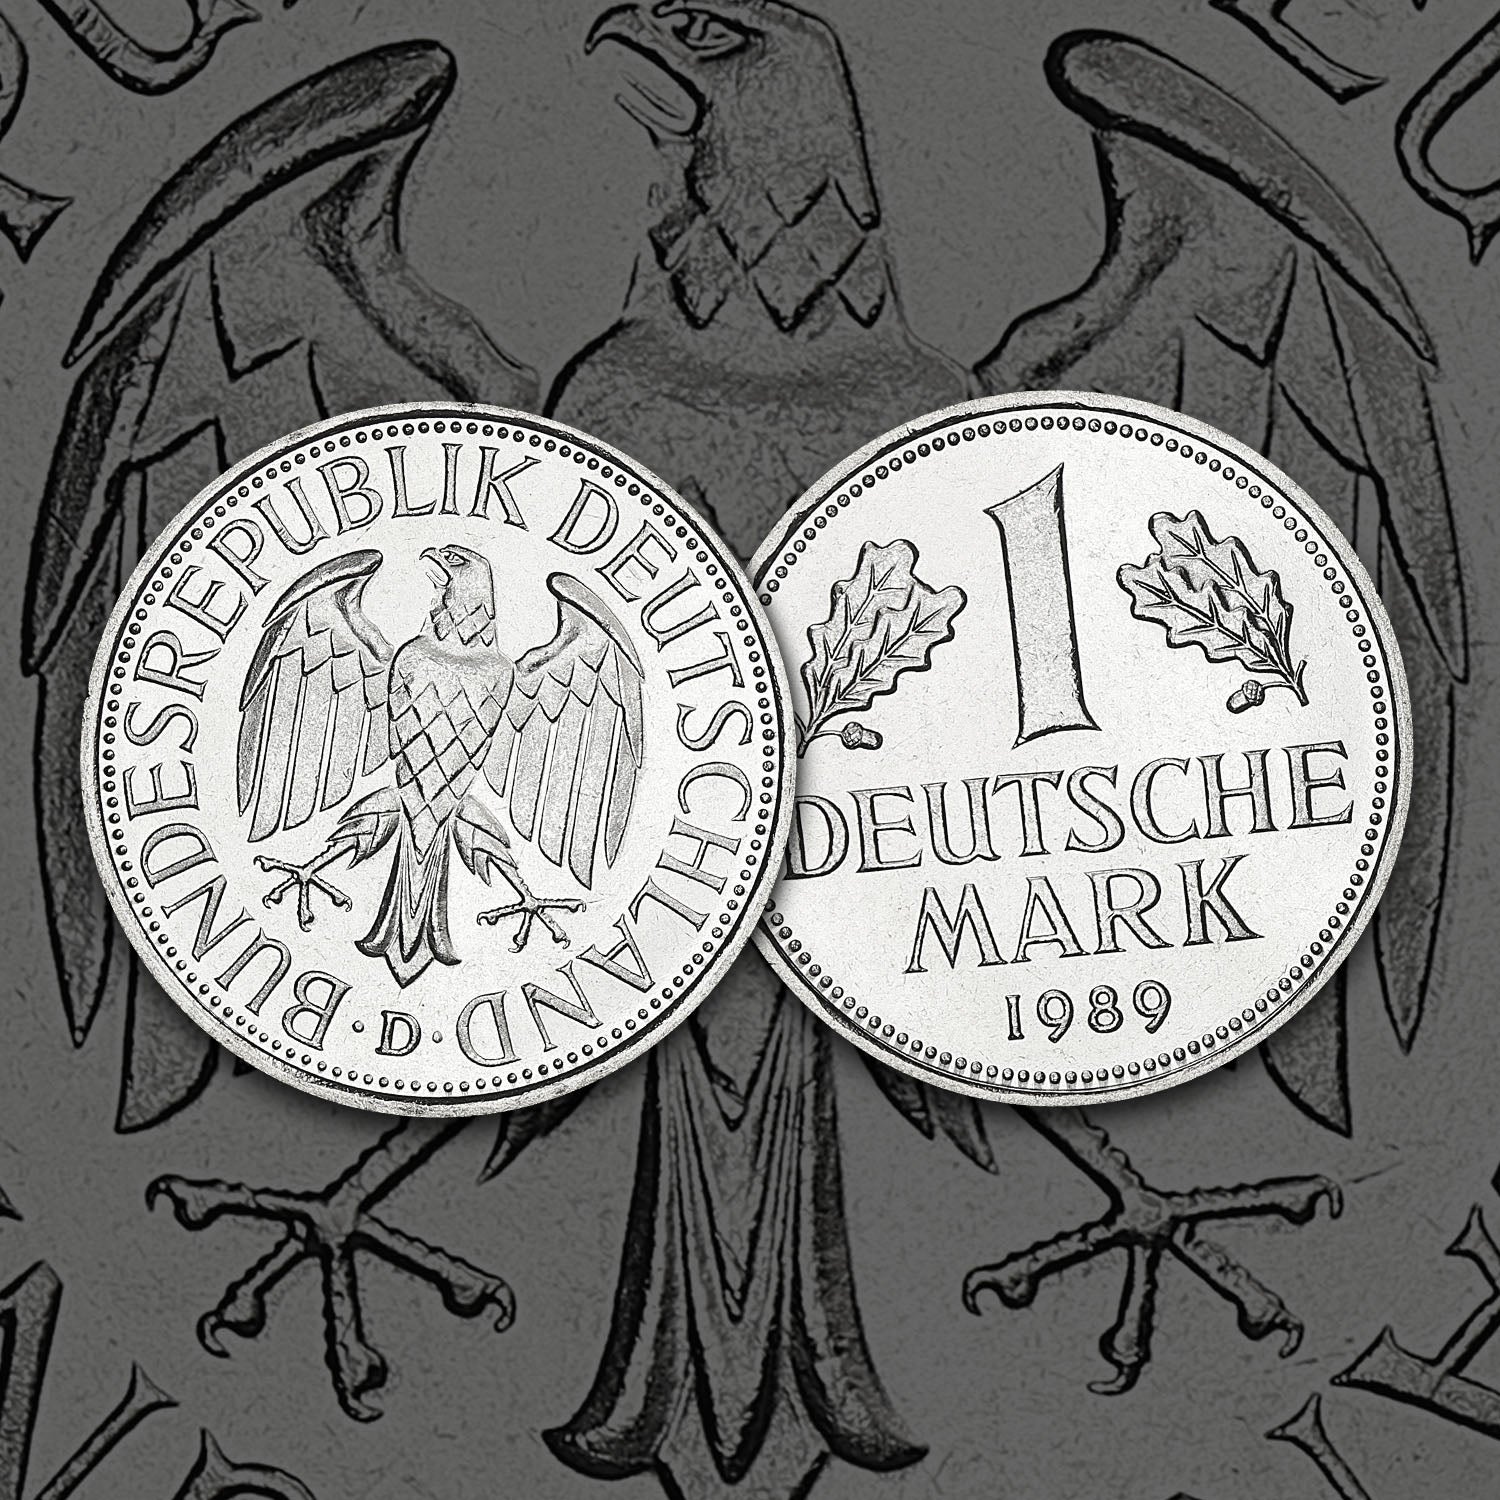 1989 Pièce de 1 Deutsche Mark dans la section du mur de Berlin